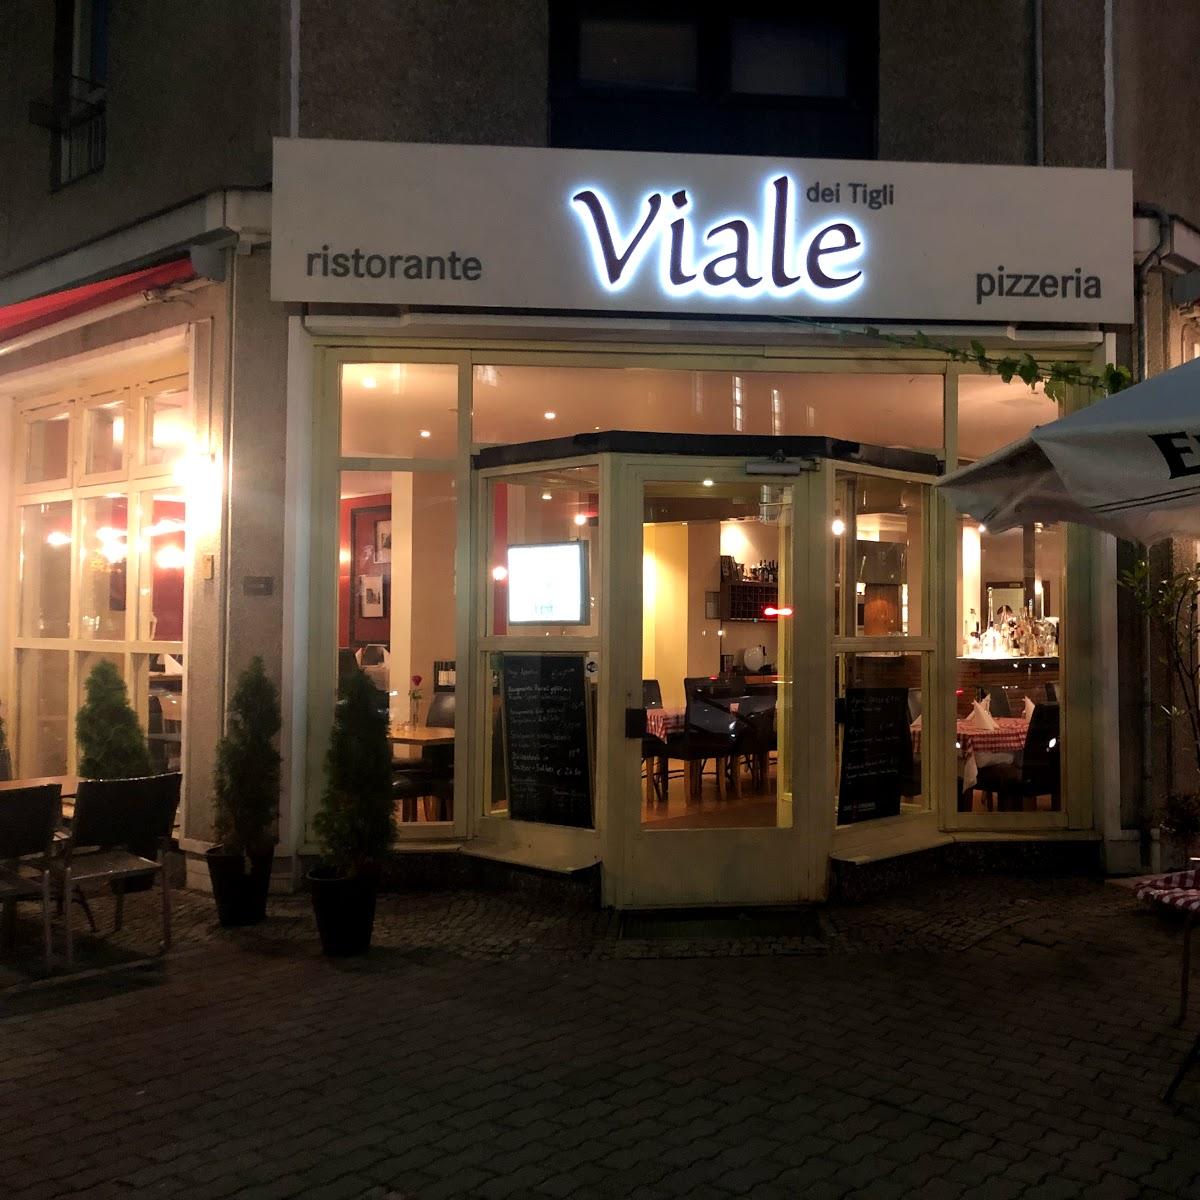 Restaurant "Viale dei Tigli" in Berlin